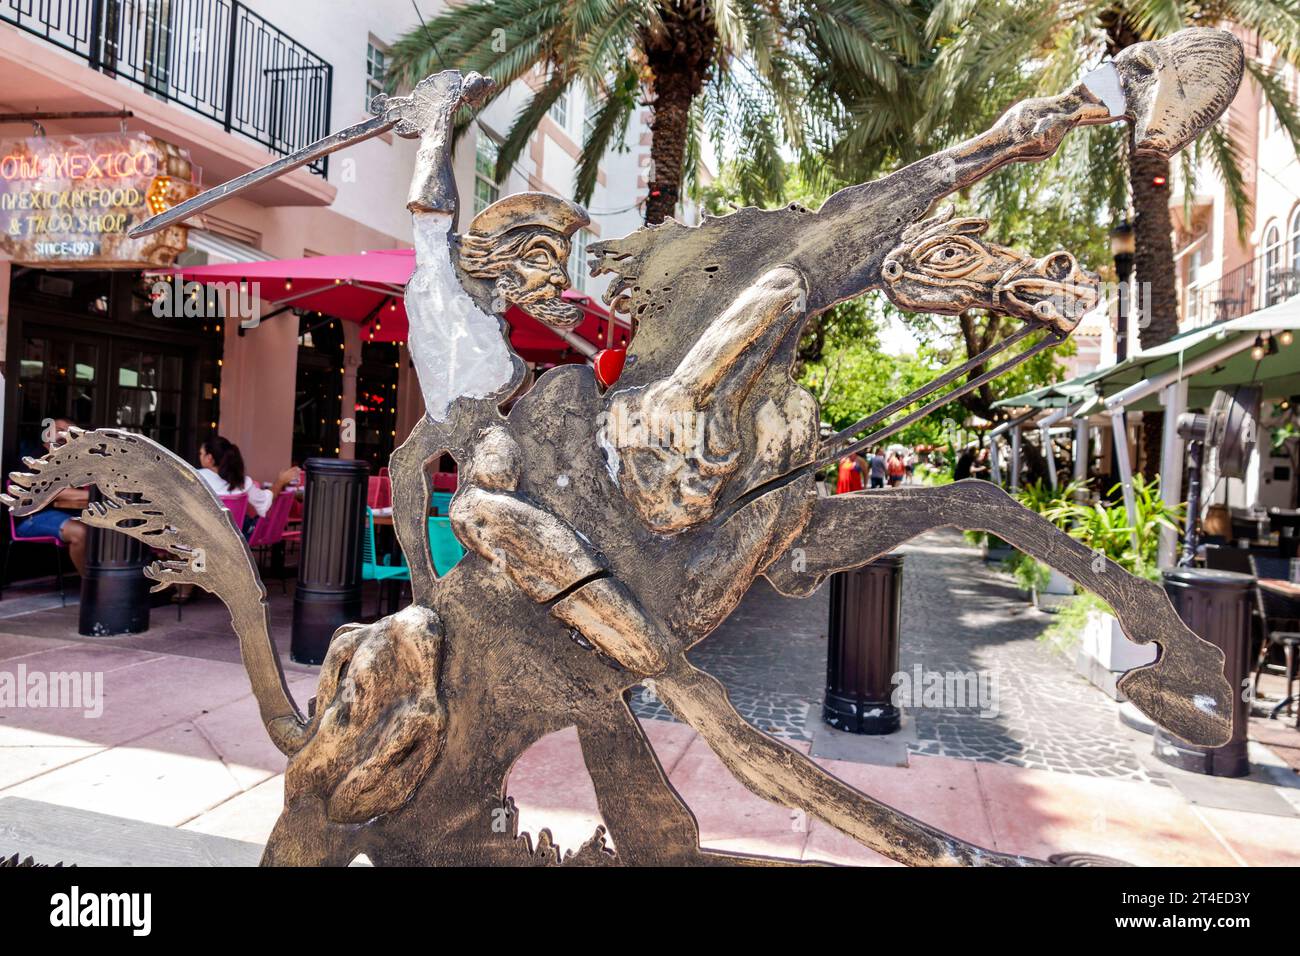 Miami Beach Floride, village espagnol historique Espanola Way, extérieur, entrée principale de l'hôtel, sculpture d'art Don Quichotte caractère f Banque D'Images